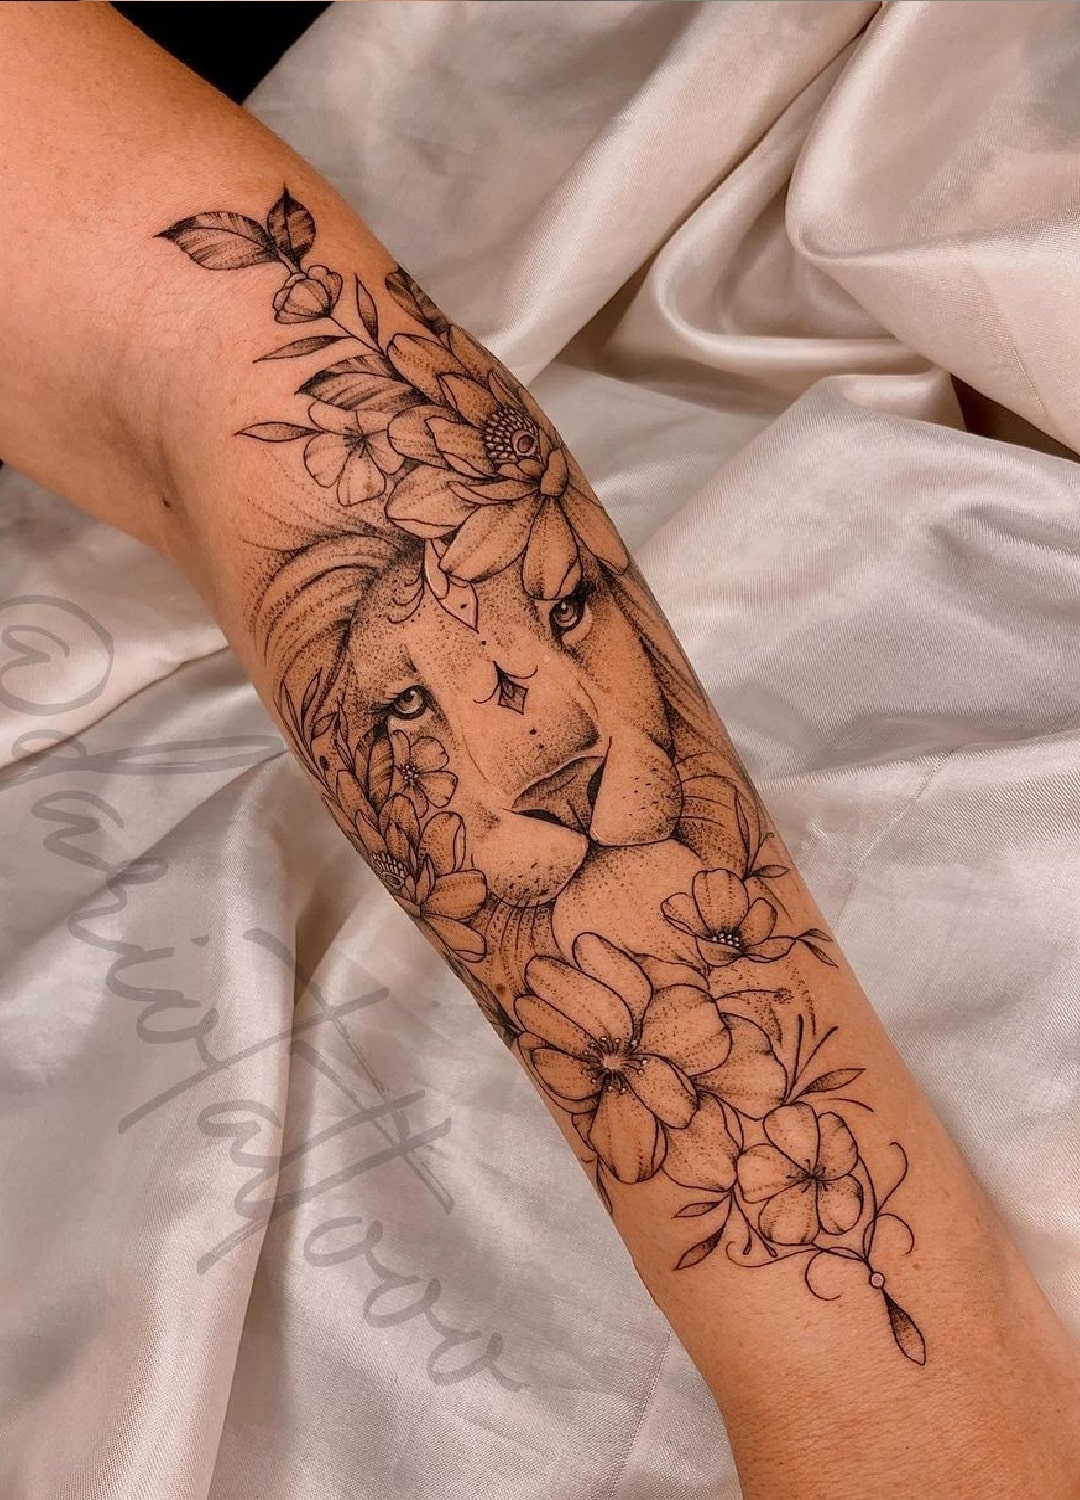 tatuagem-de-leao-feminina-no-antebraco-com-flores 